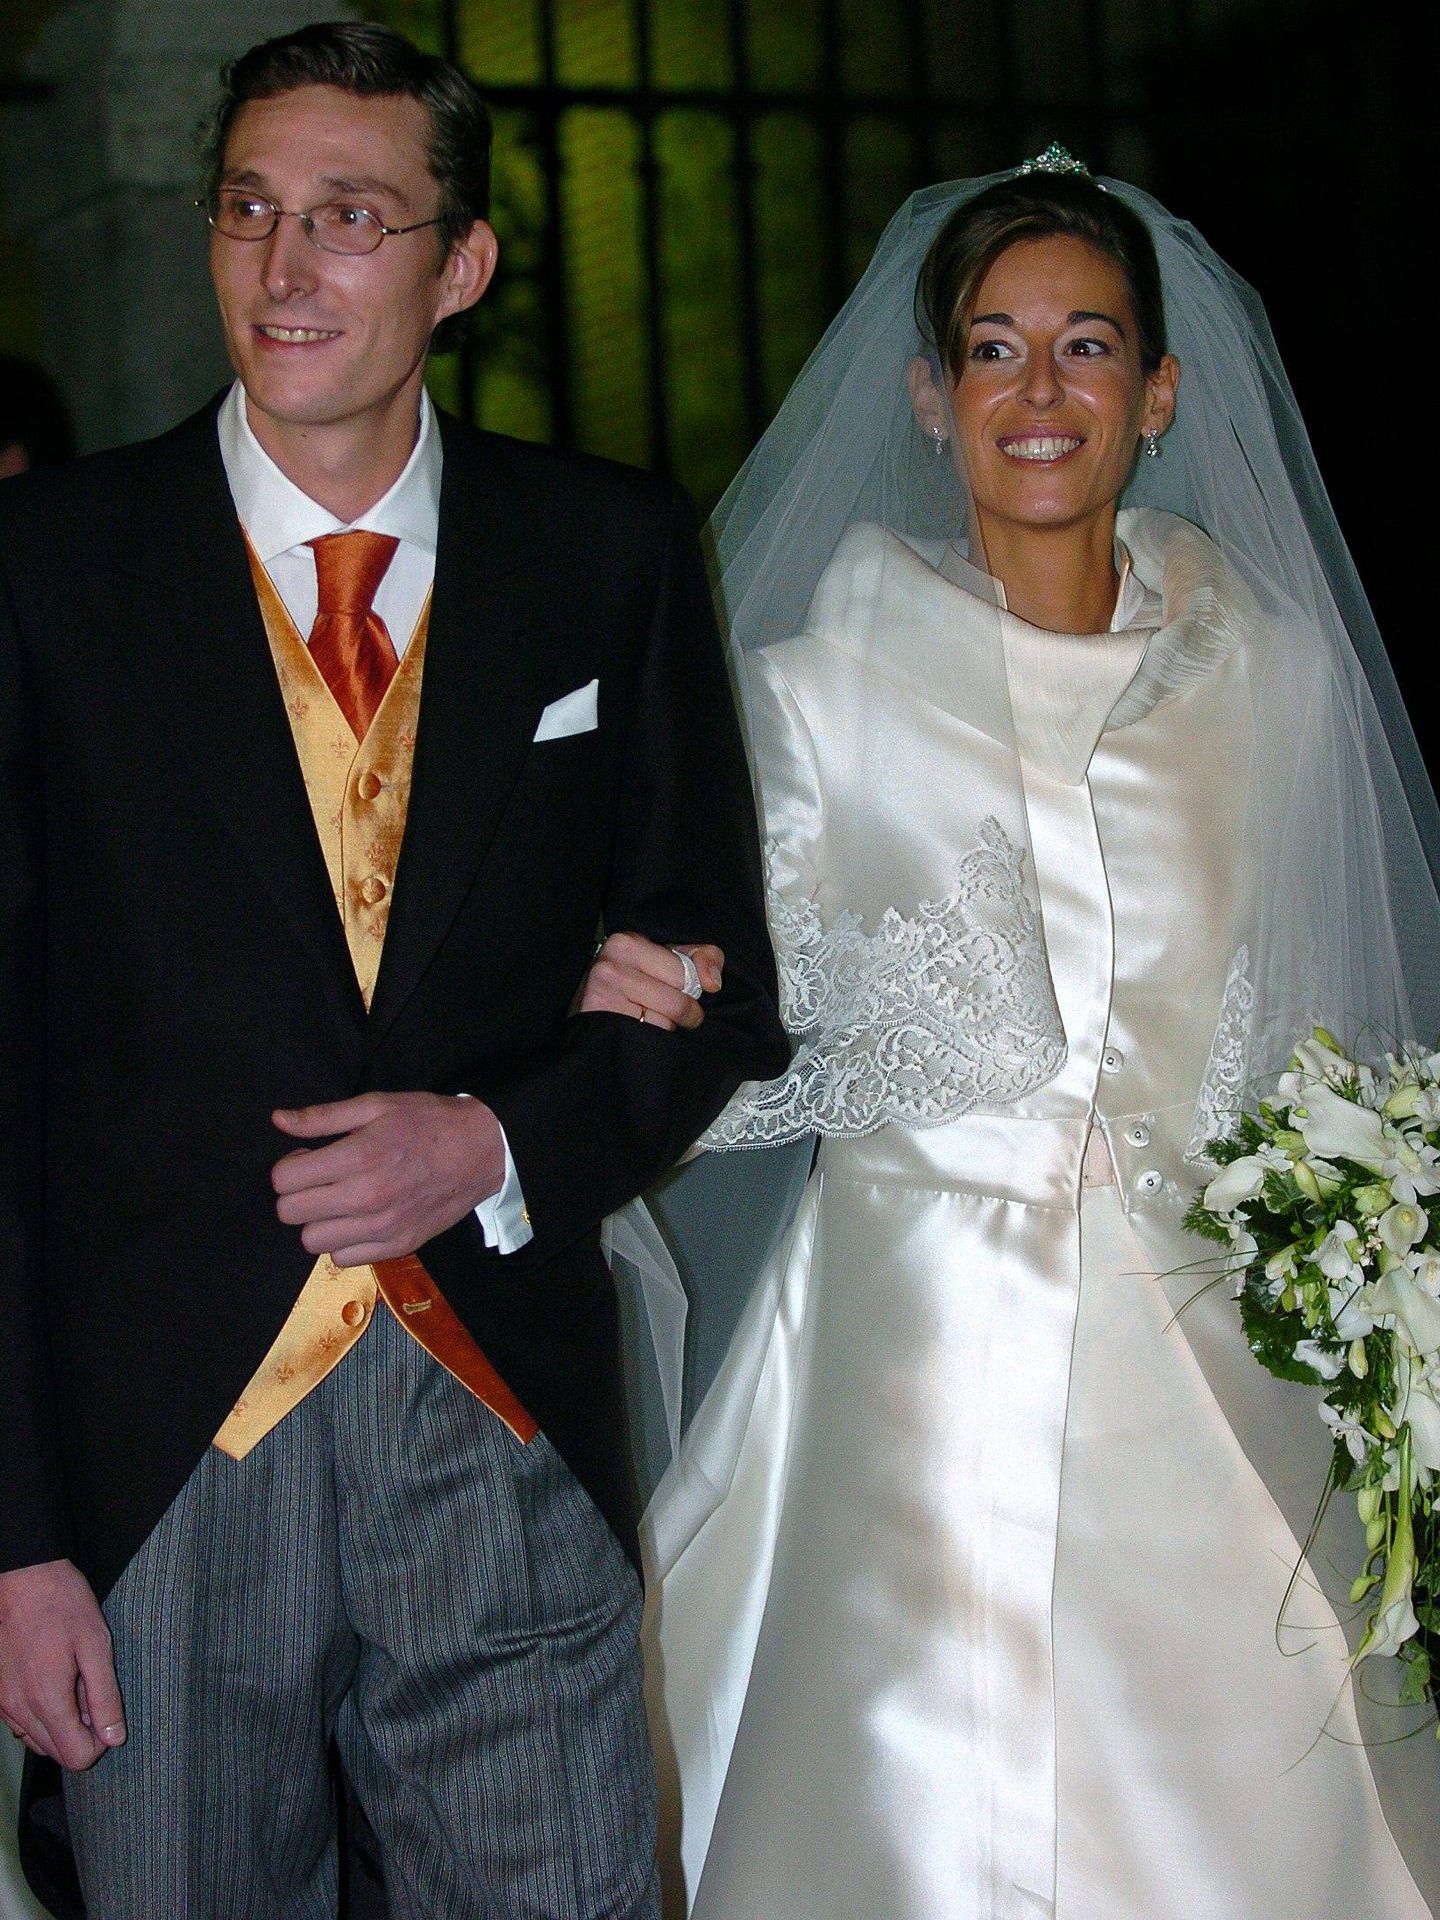 Fernando Gómez-Acebo y Mónica Martín durante su boda en 2007 en la iglesia de la Encarnación, en Madrid.